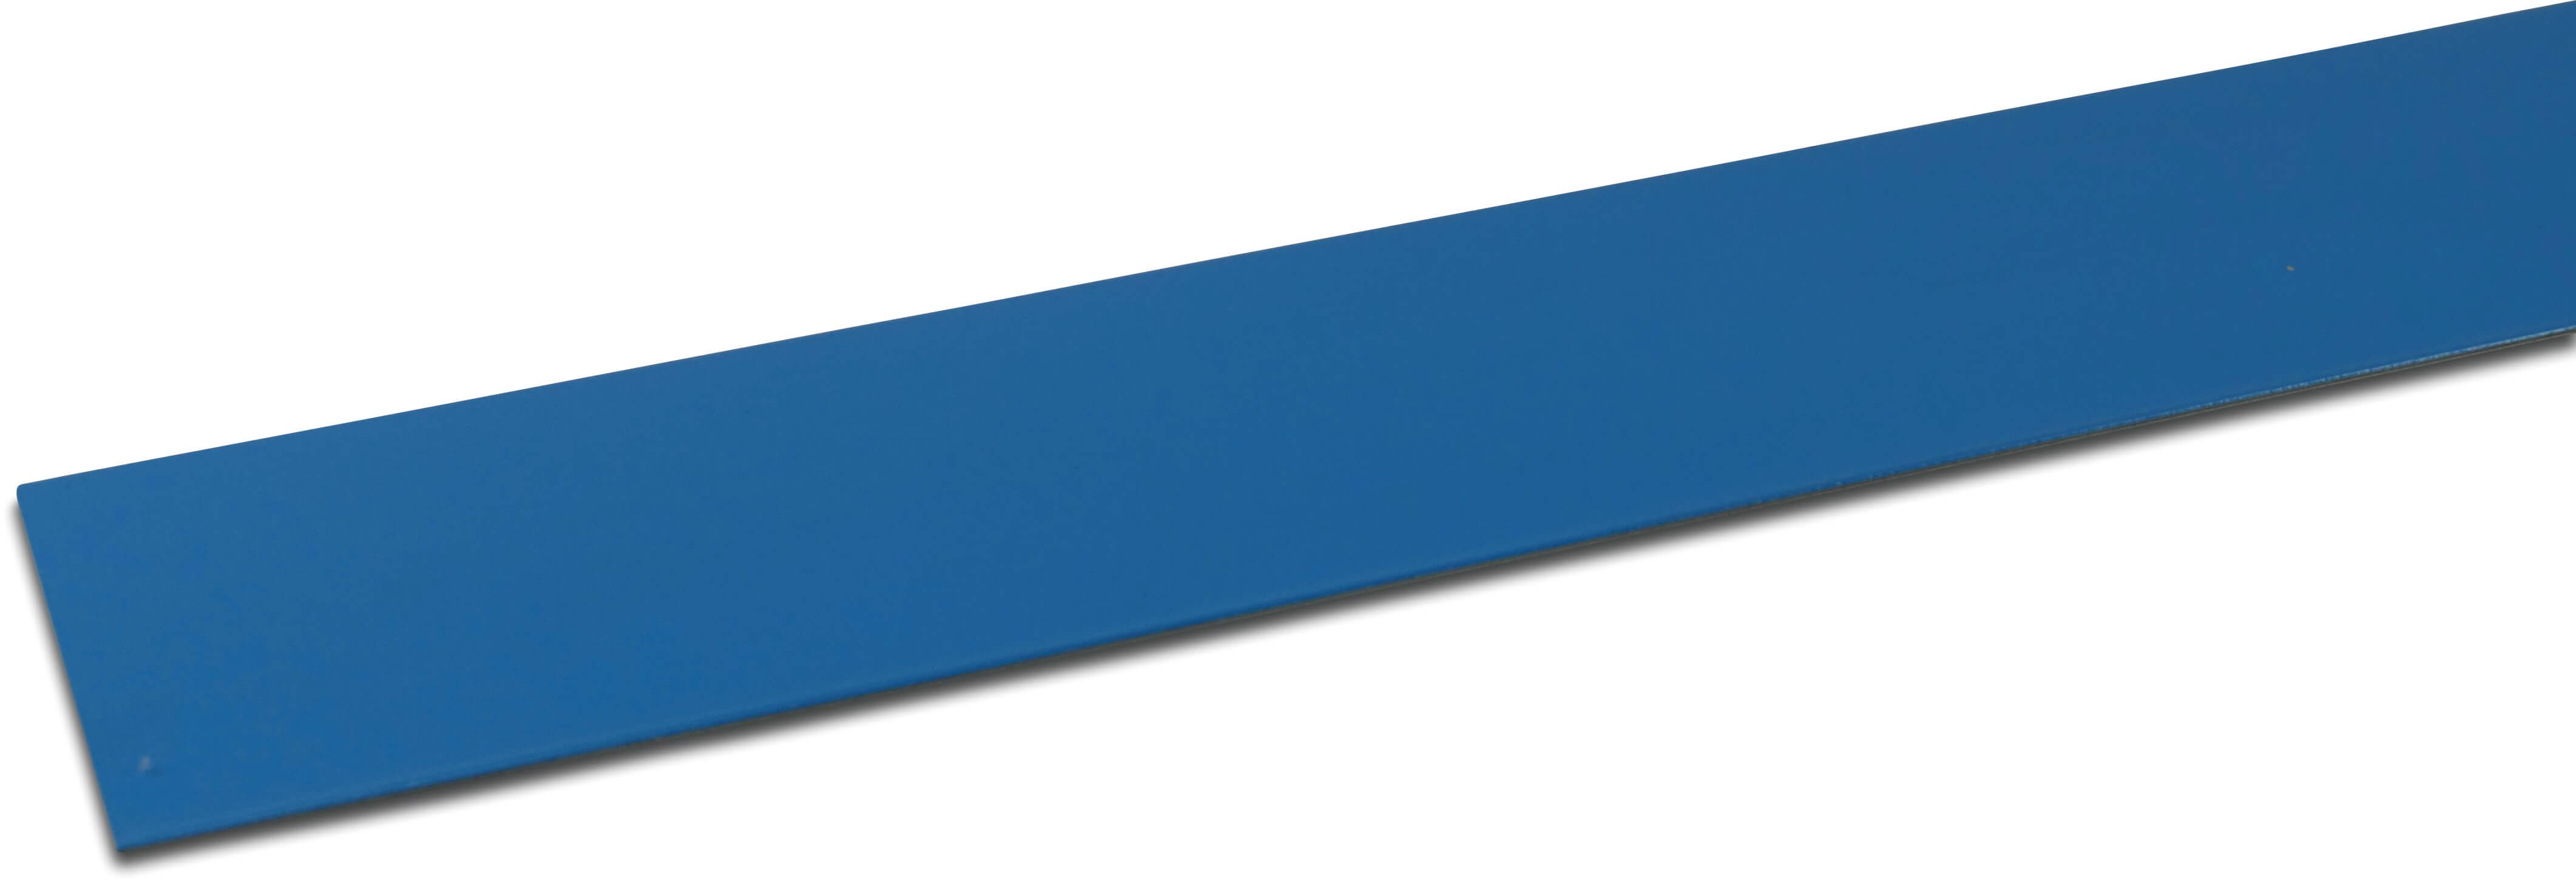 Elbe Taśma metalem powleczona PVC 70 mm x 2000 mm niebieski 2m